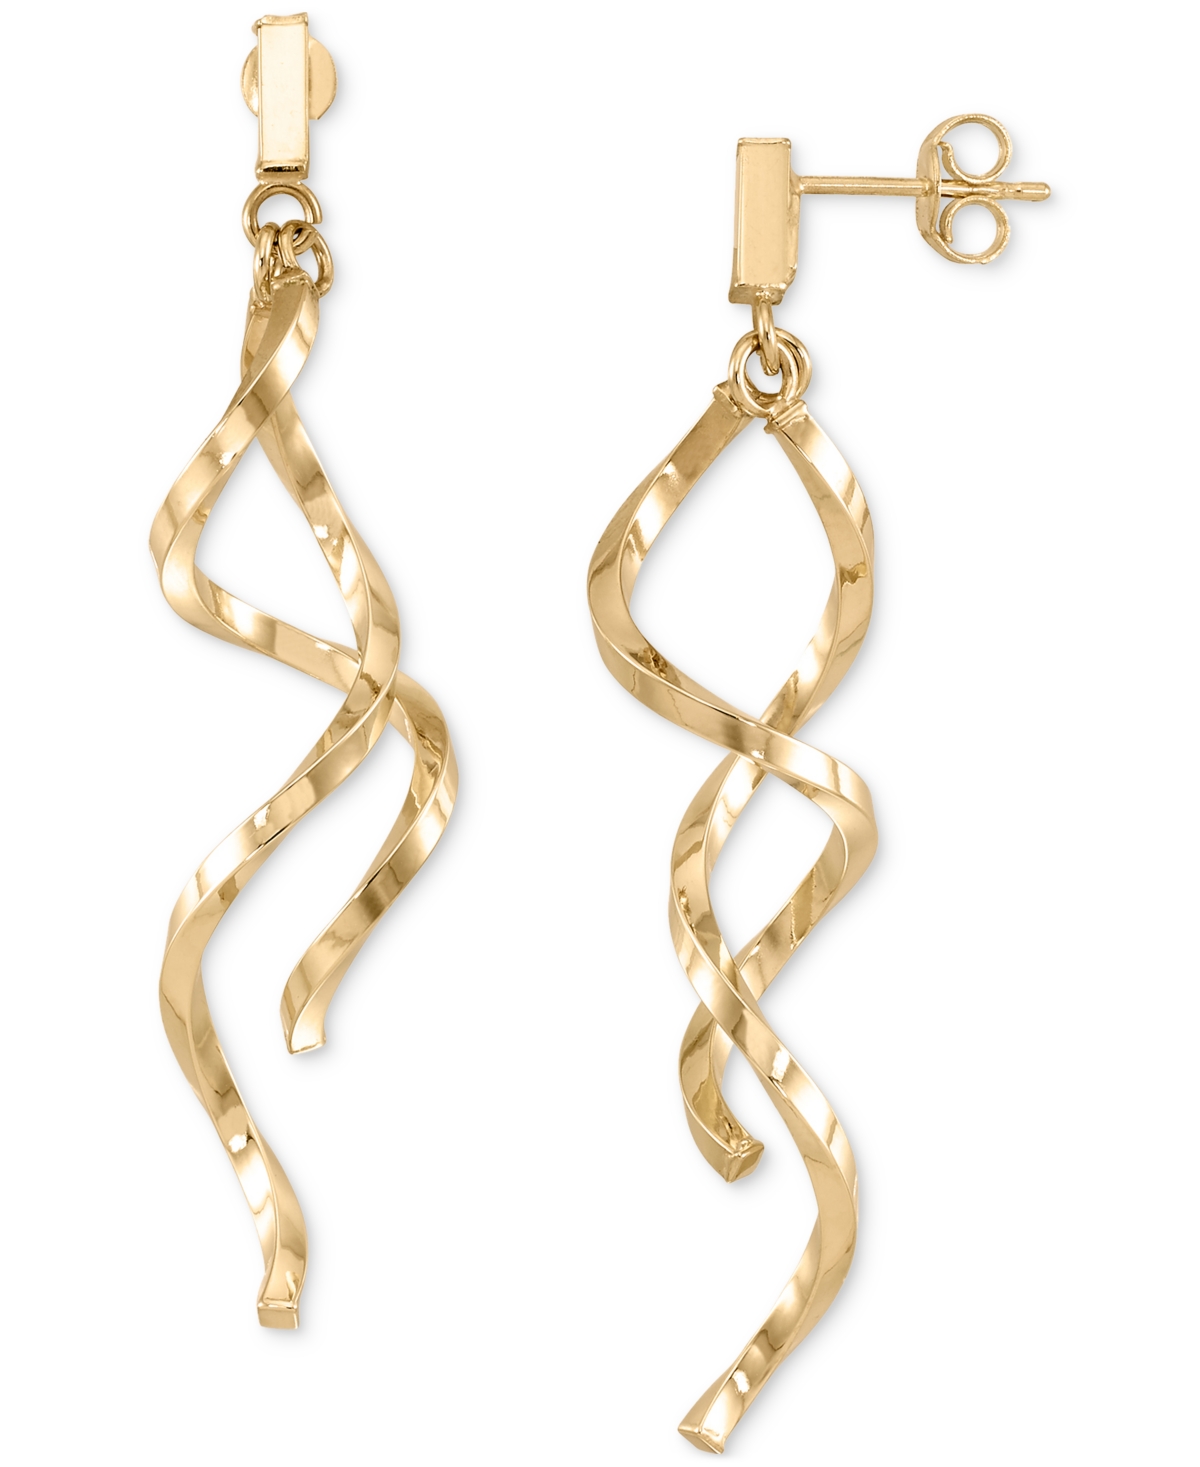 Double Twist Drop Earrings in 14k Gold